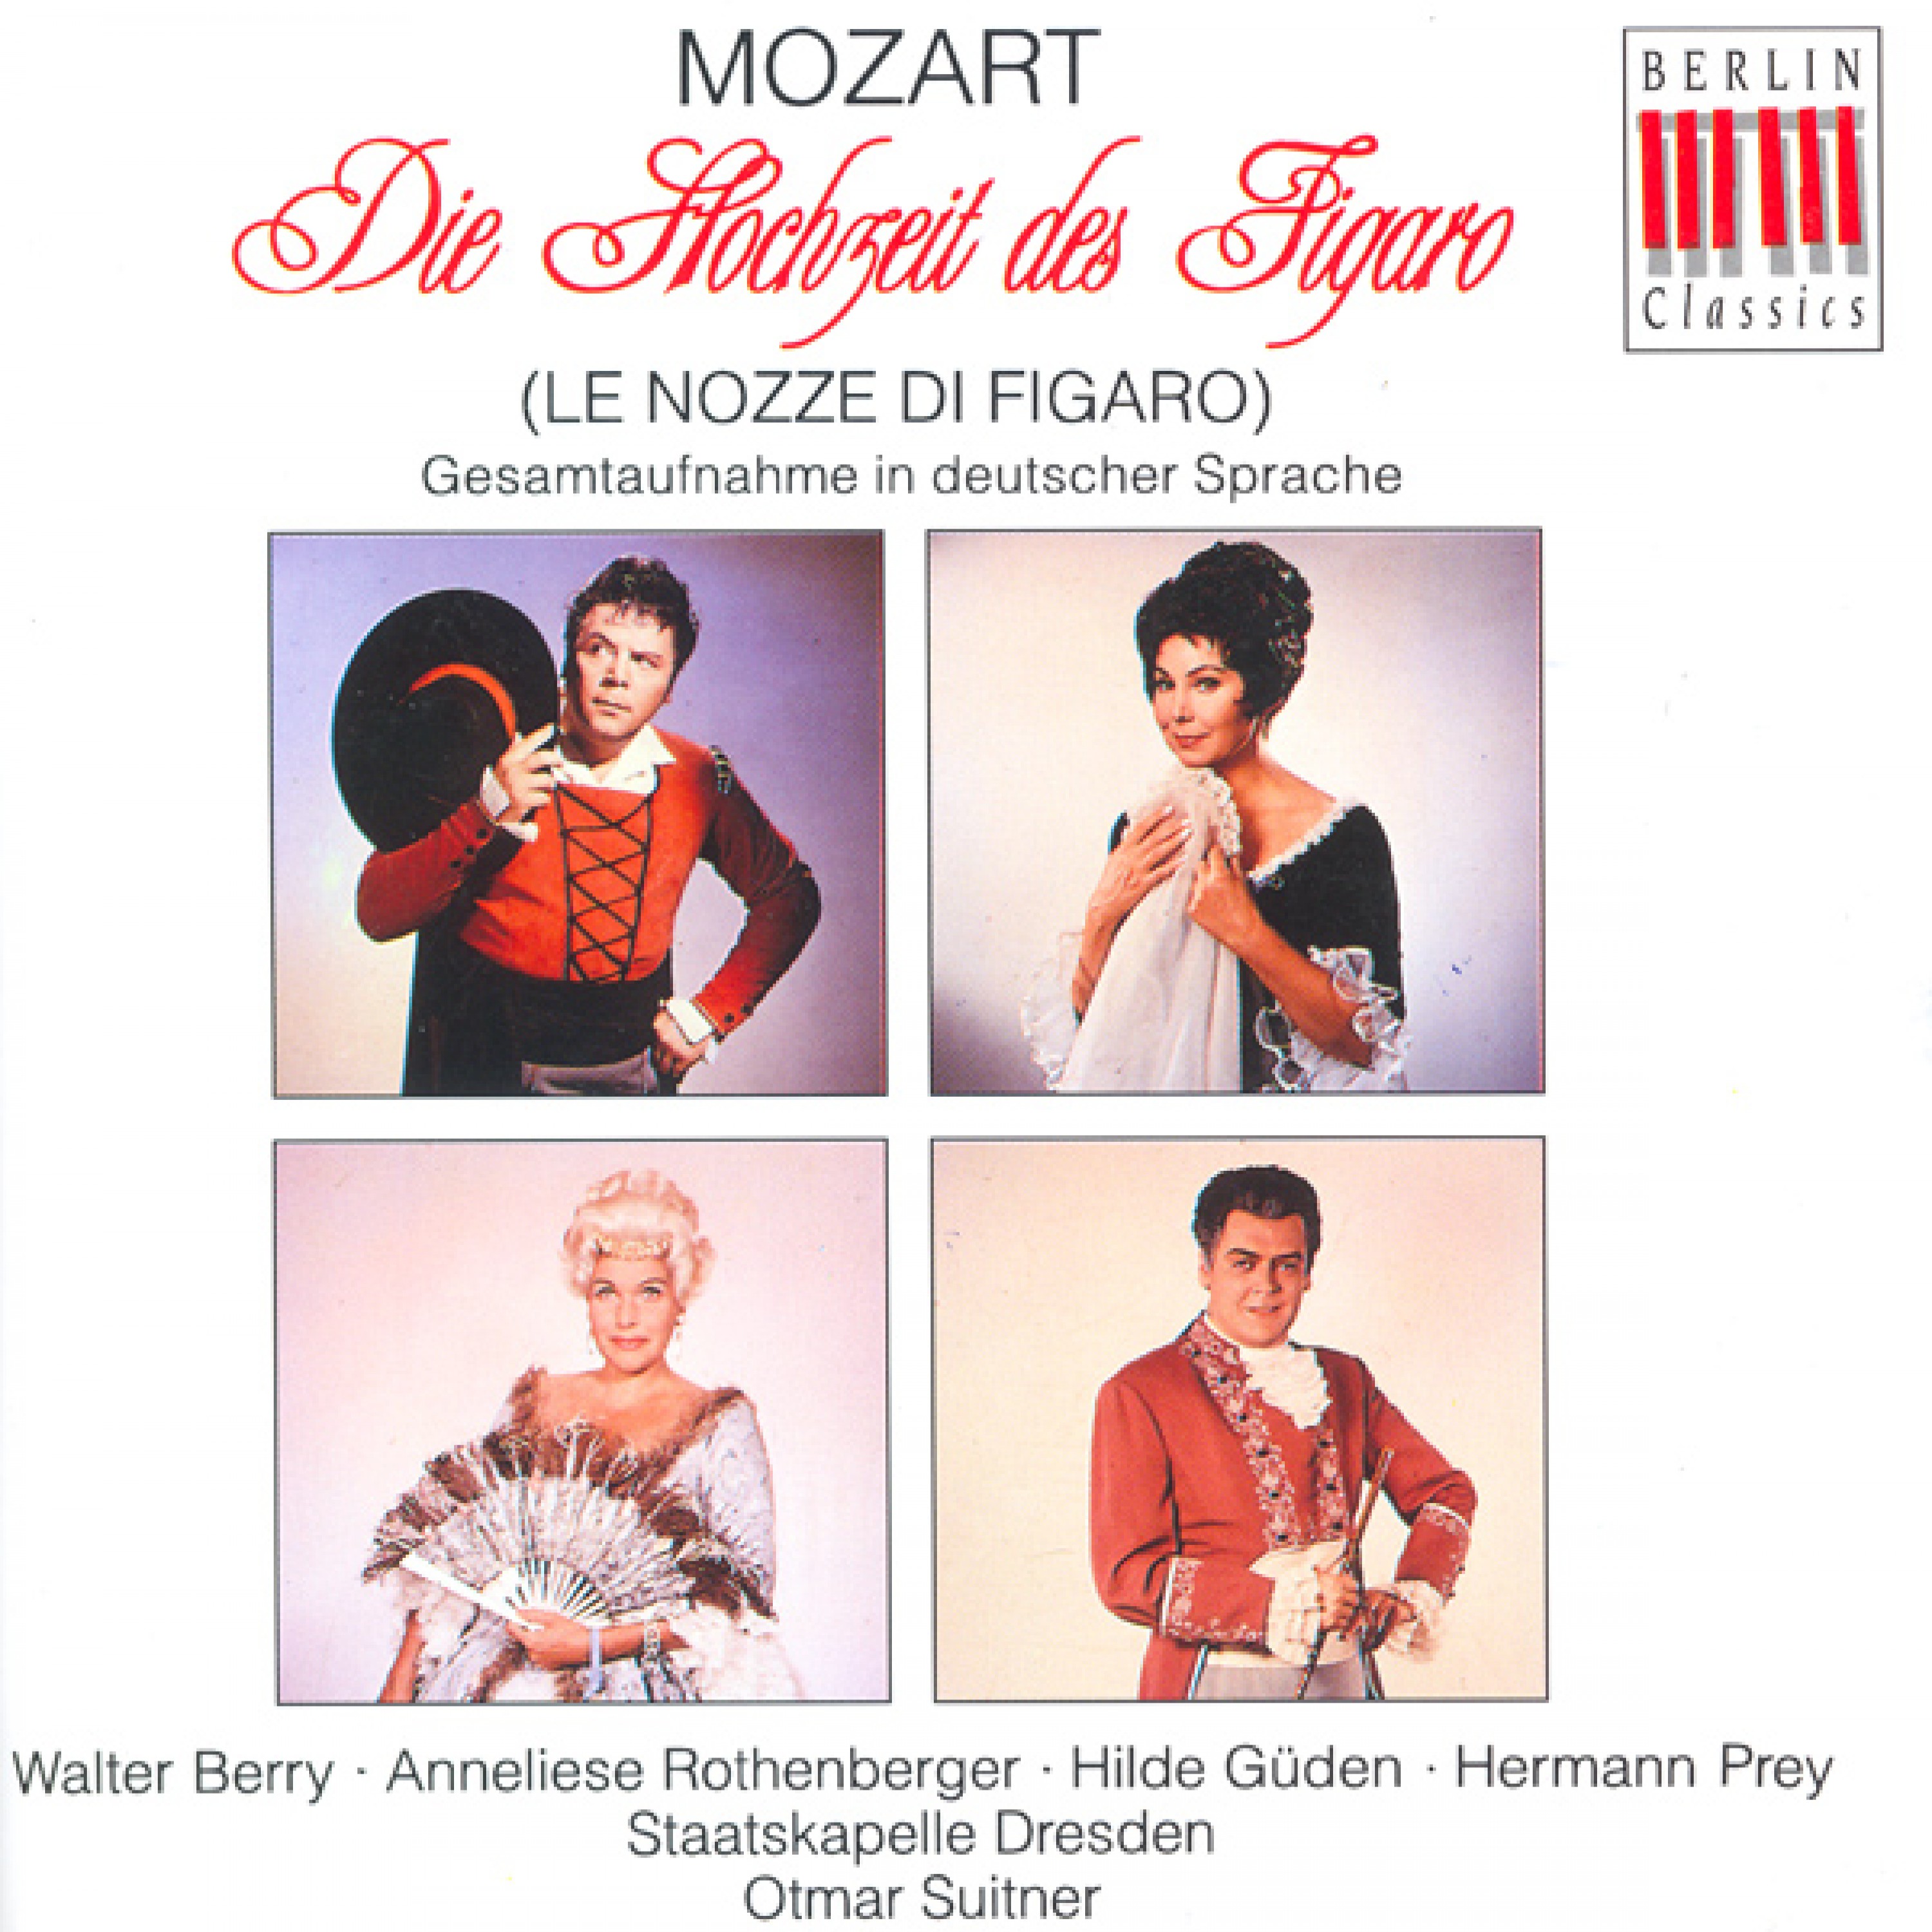 Le nozze di Figaro (The Marriage of Figaro), K. 492: Act I Scene 8: Giovani liete (Chorus)